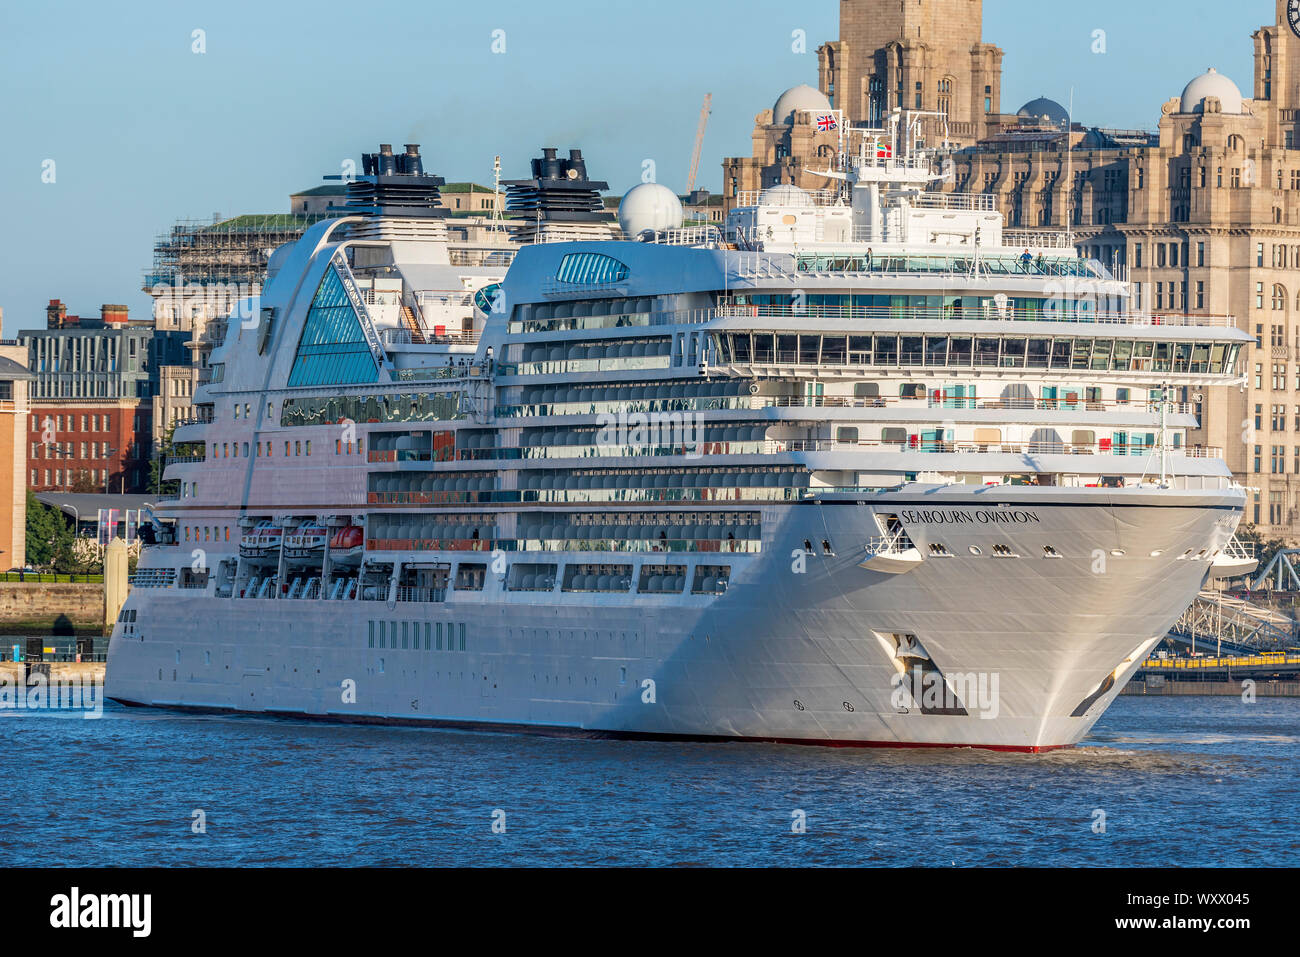 Liverpool waterfront in der Abendsonne mit Cruise lner Seabourn Ovation. Stockfoto